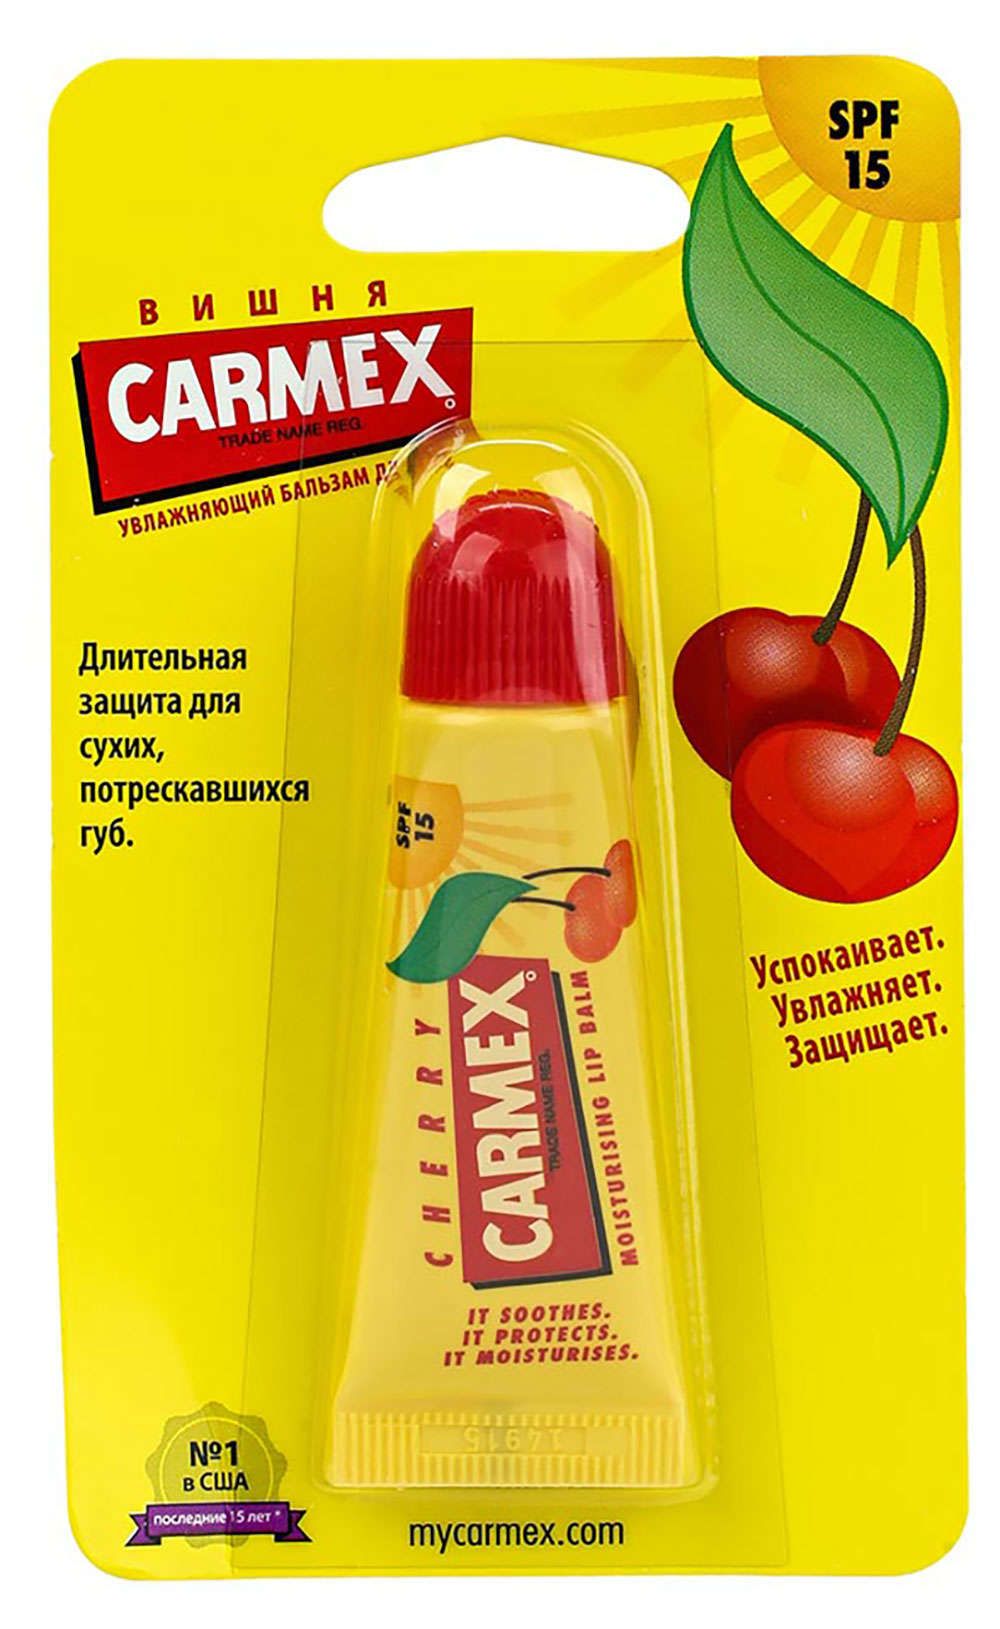 фото упаковки Carmex Бальзам для губ вишня SPF 15